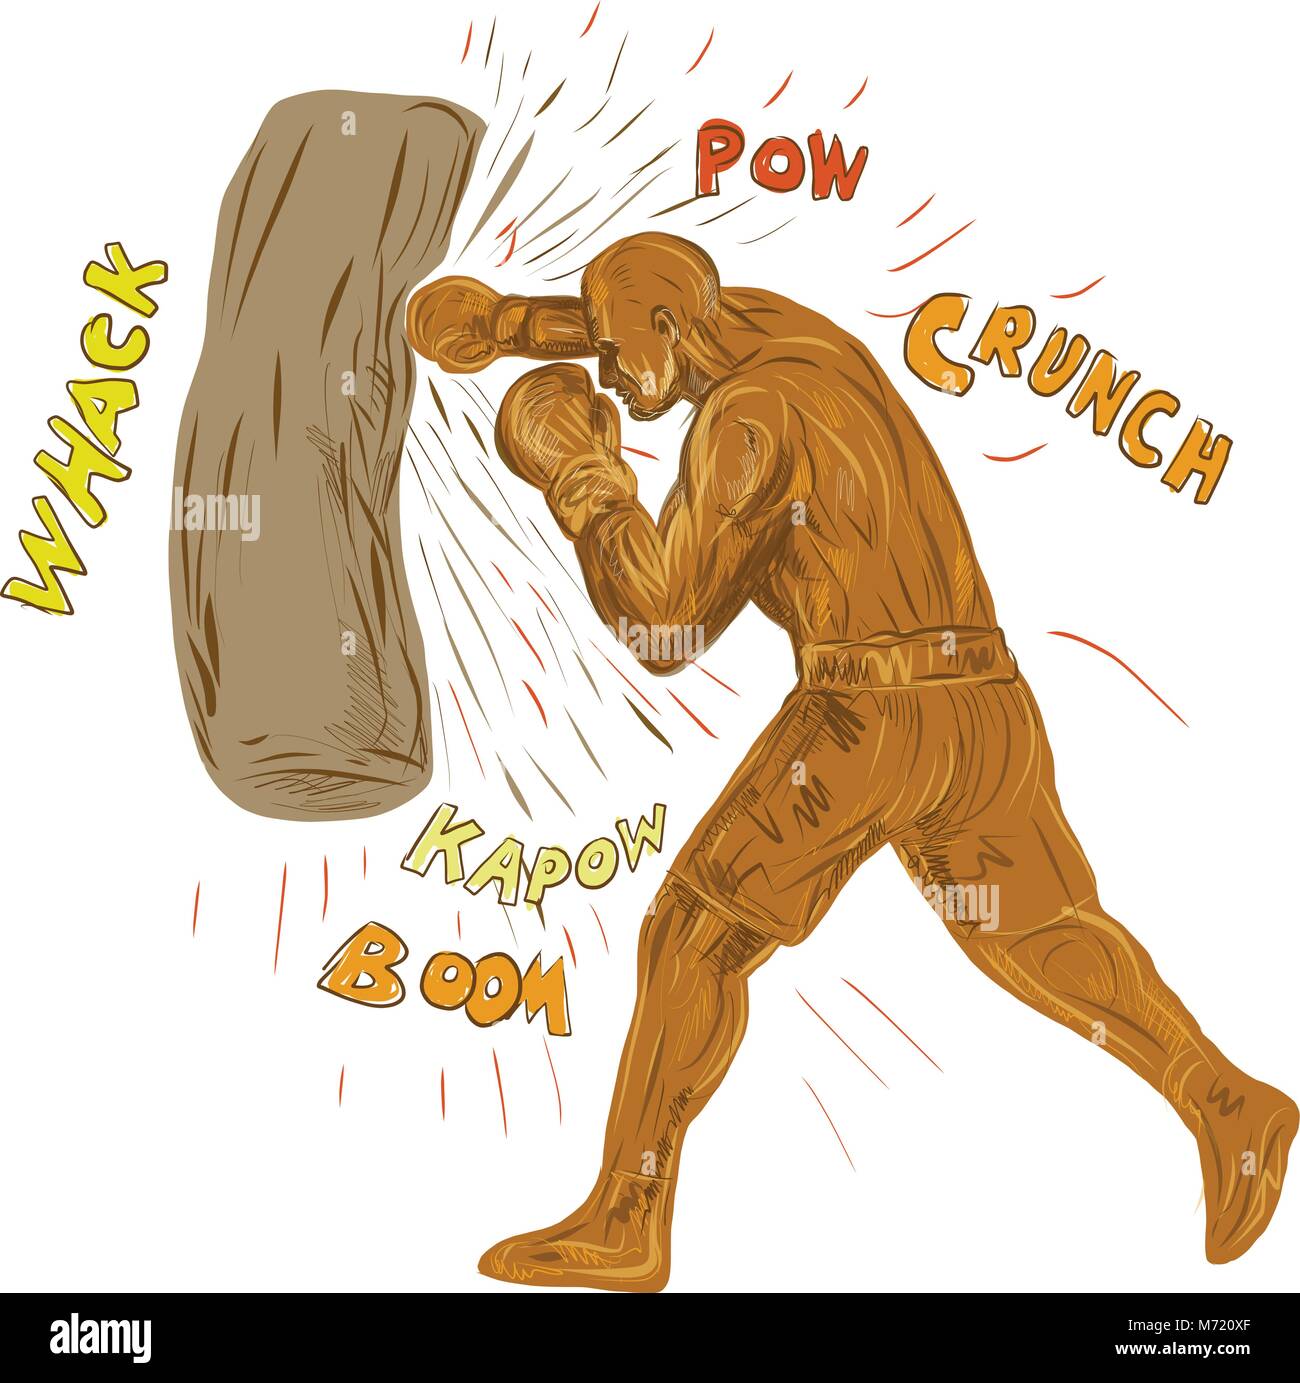 Zeichnung Skizze stil Abbildung: ein Boxer boxen Stanzen schlagen der Boxsack mit Worten Pow, whack, kapow, Ausleger, Crunch auf isolierten backgroun Stock Vektor